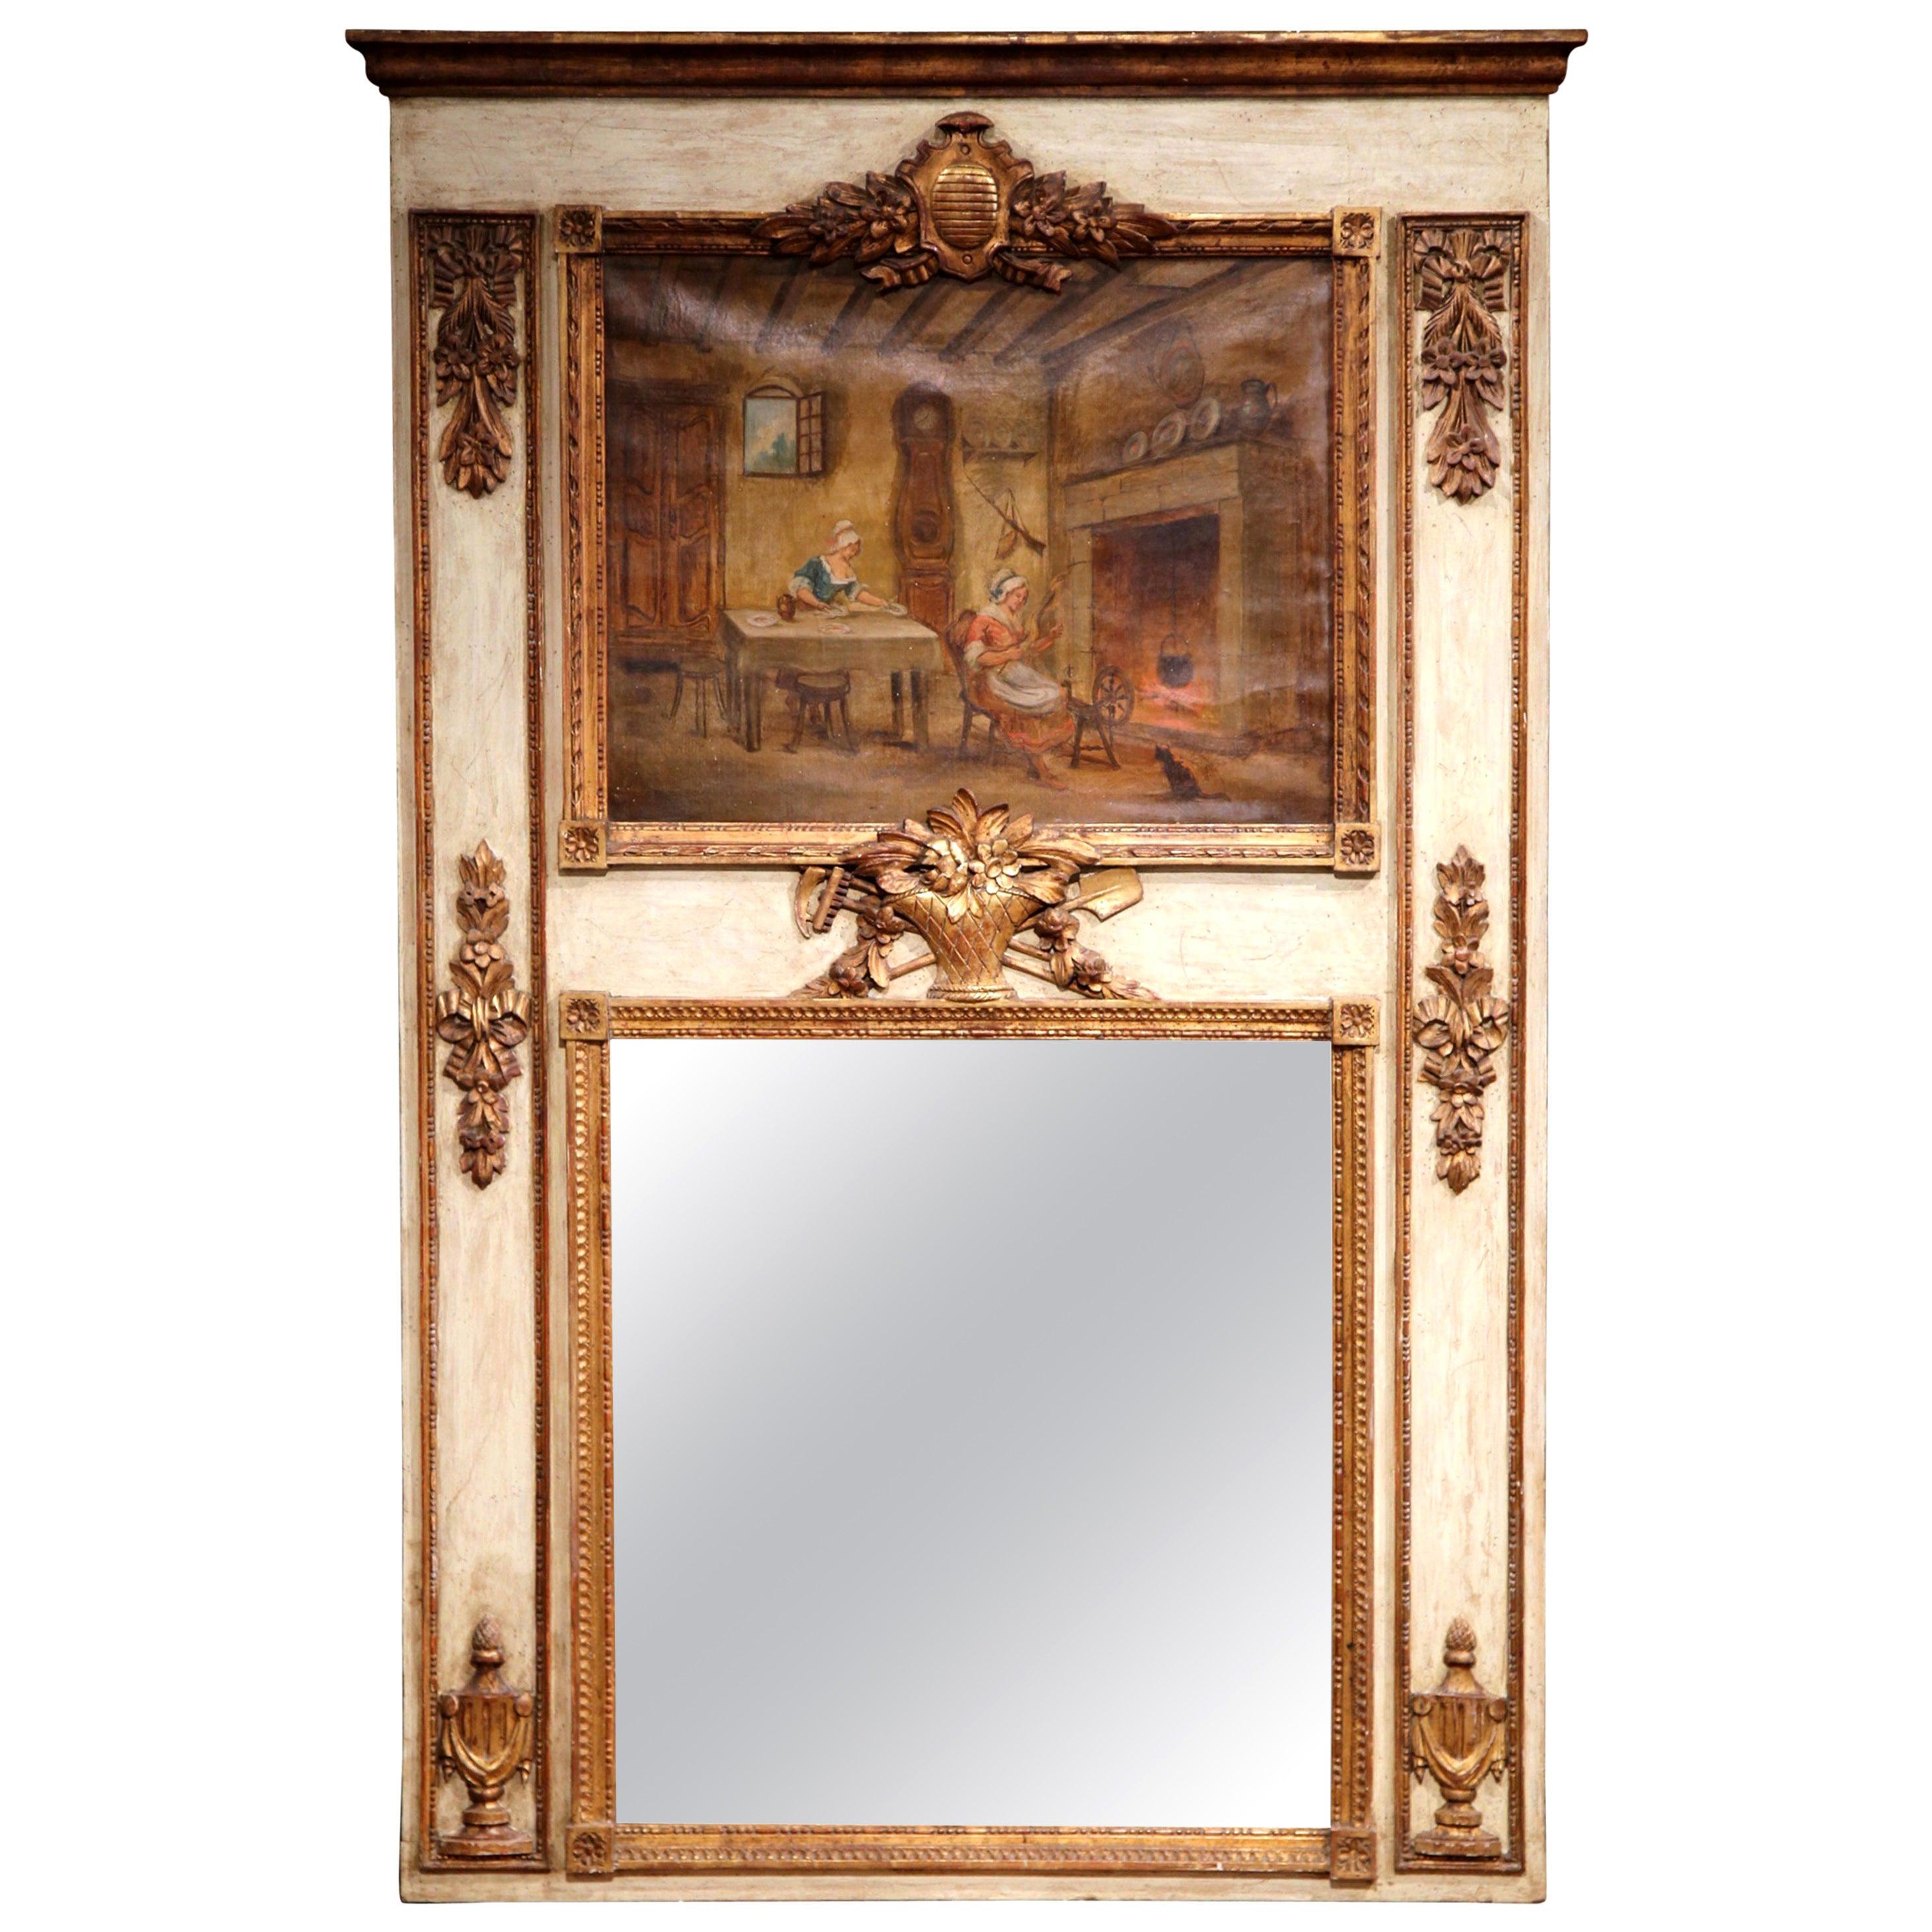 Miroir Trumeau français du 19ème siècle, sculpté, peint et doré